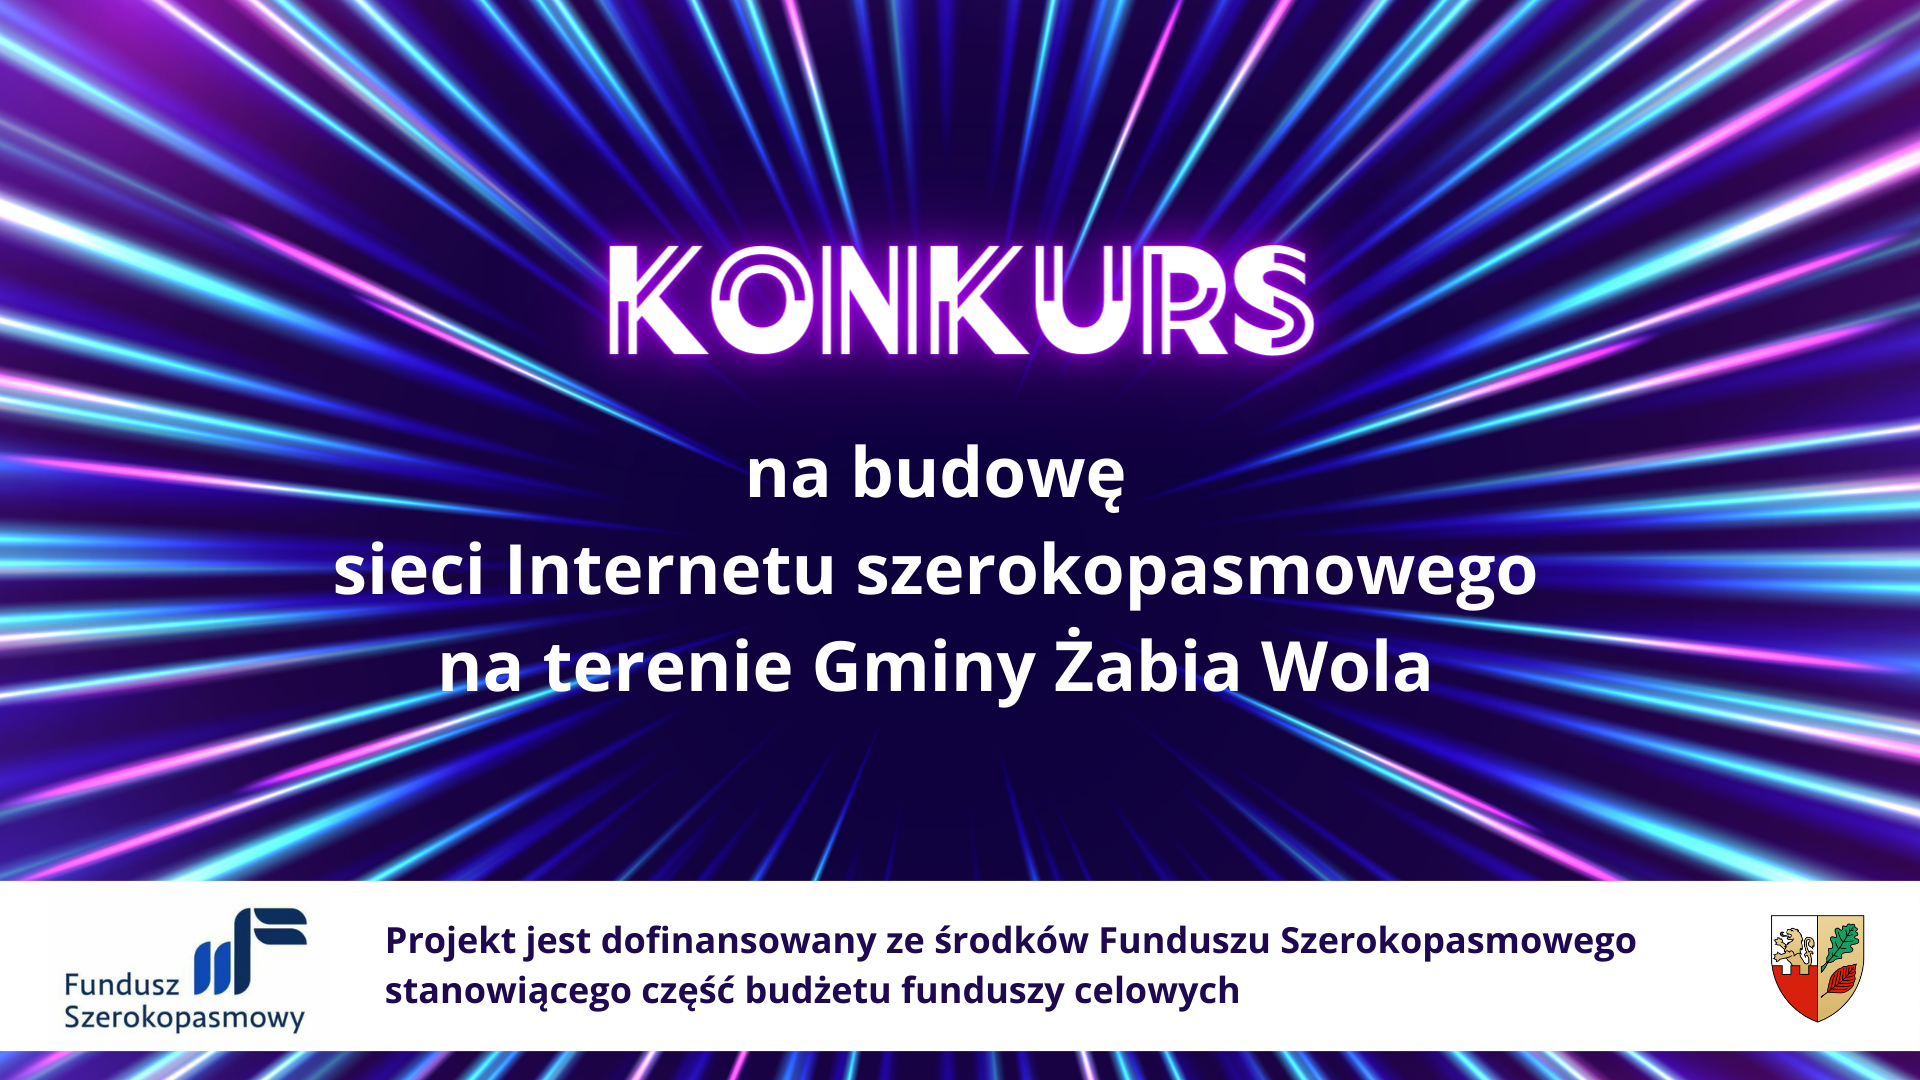 Konkurs na budowę sieci Internetu szerokopasmowego na terenie Gminy Żabia Wola